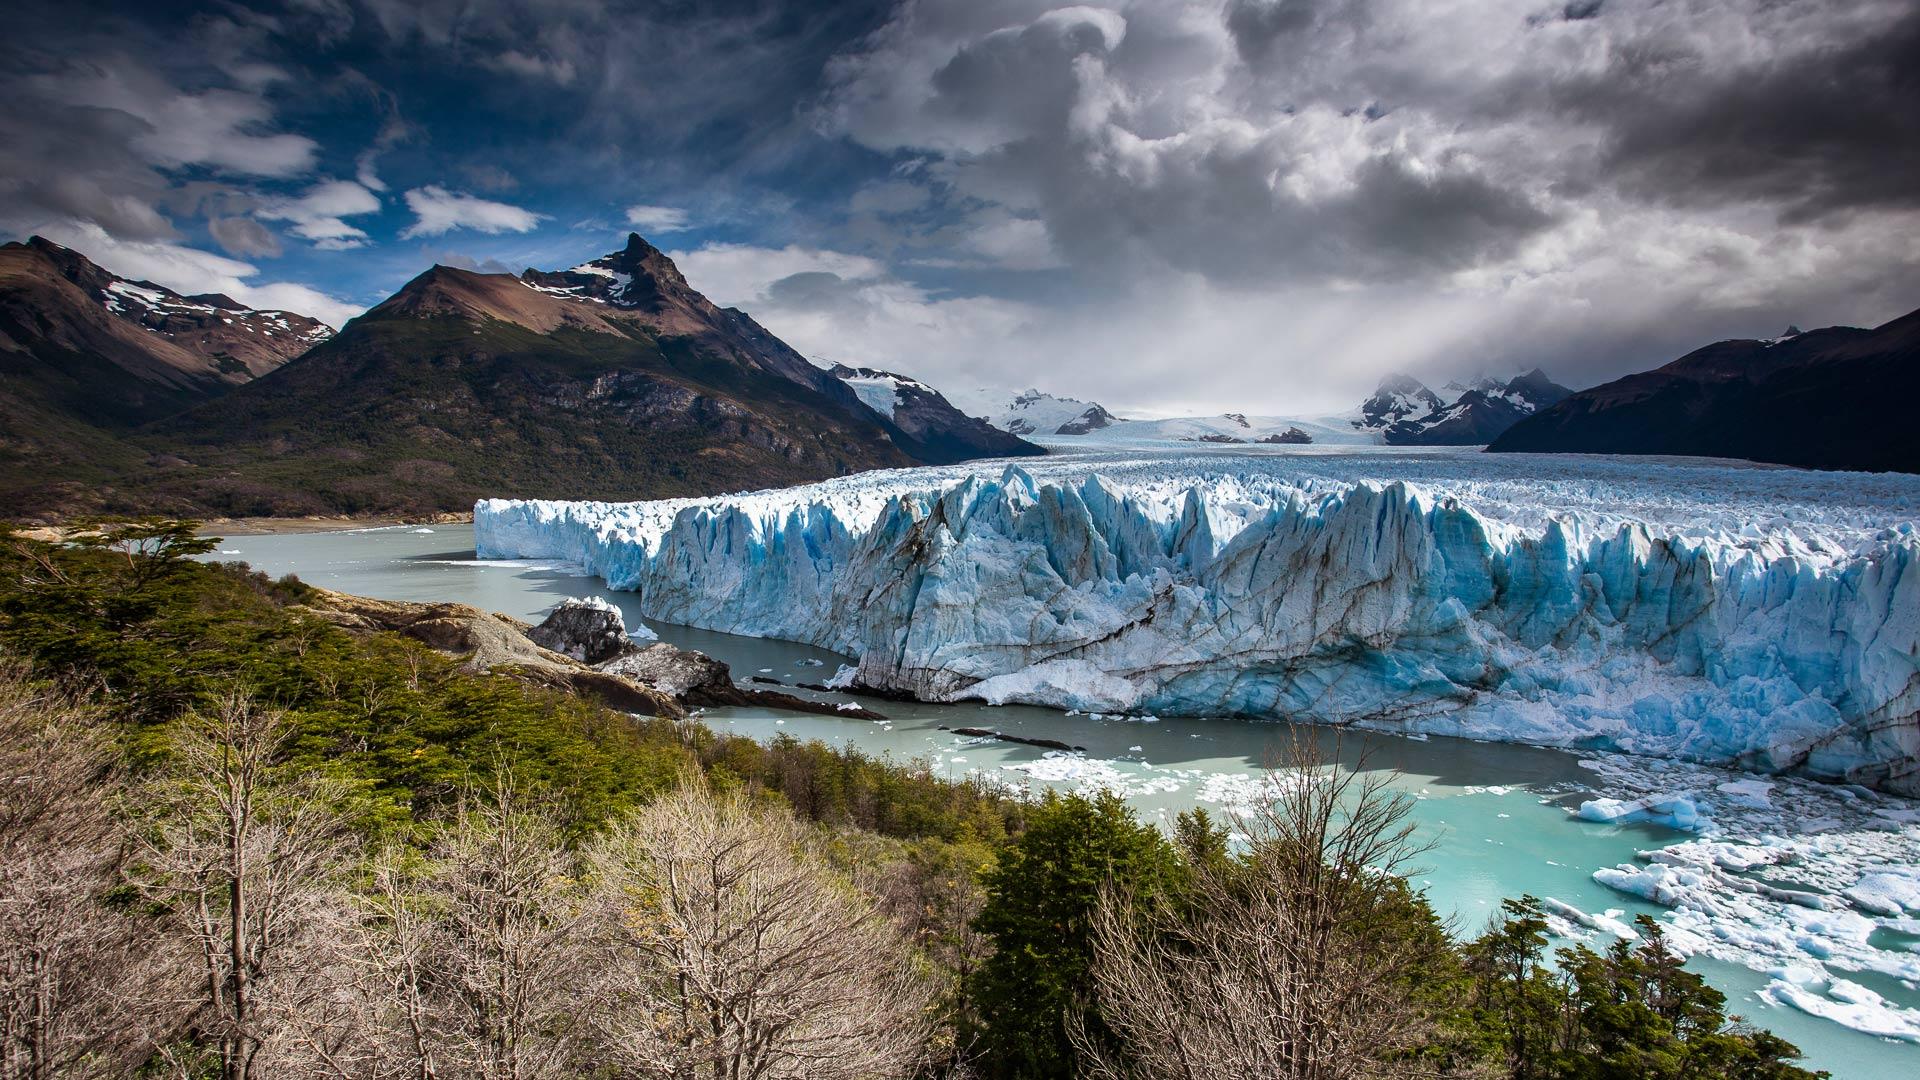 Perito Moreno Glacier in the Los Glaciares National Park